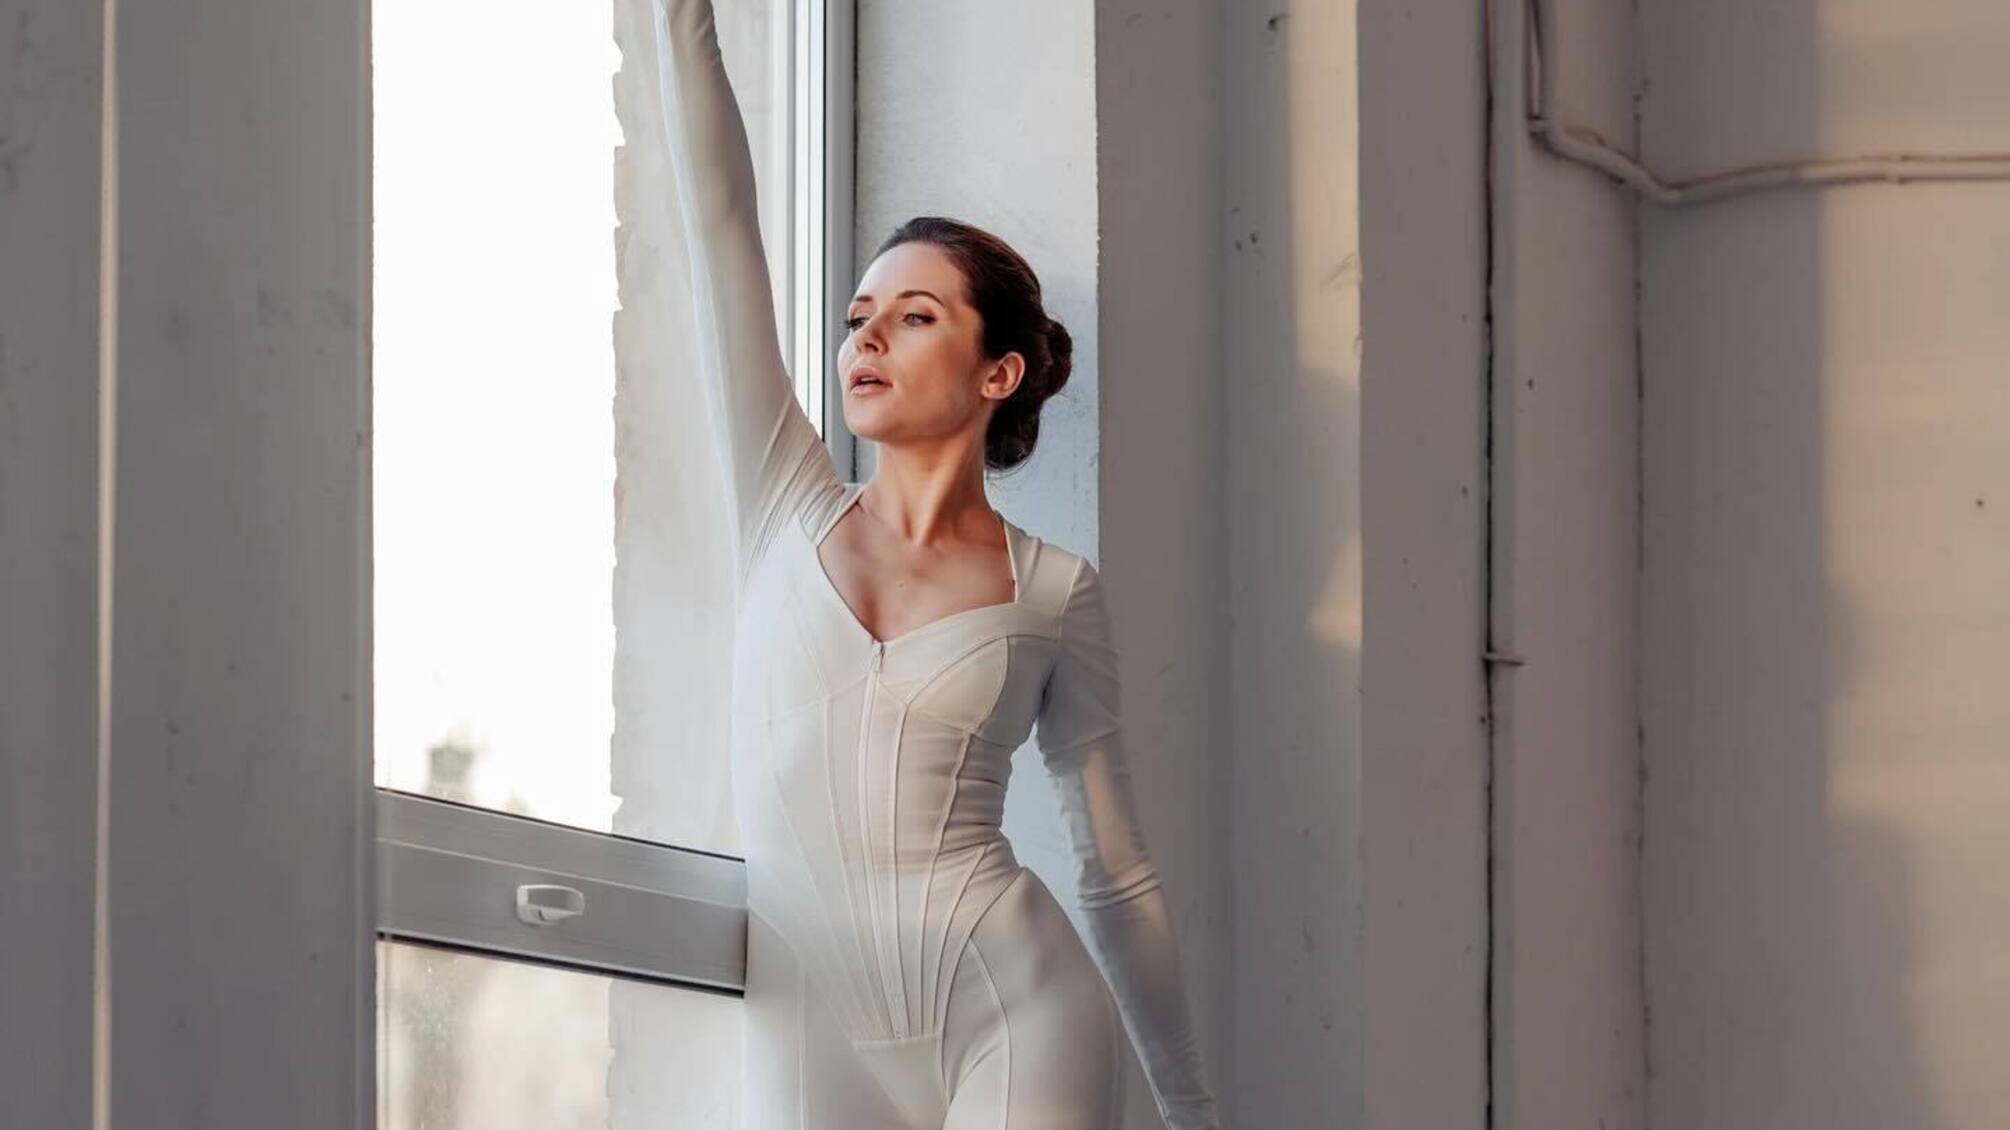 'Віра - потужний інструмент': акторка Денисенко розповіла про свою дитячу мрію